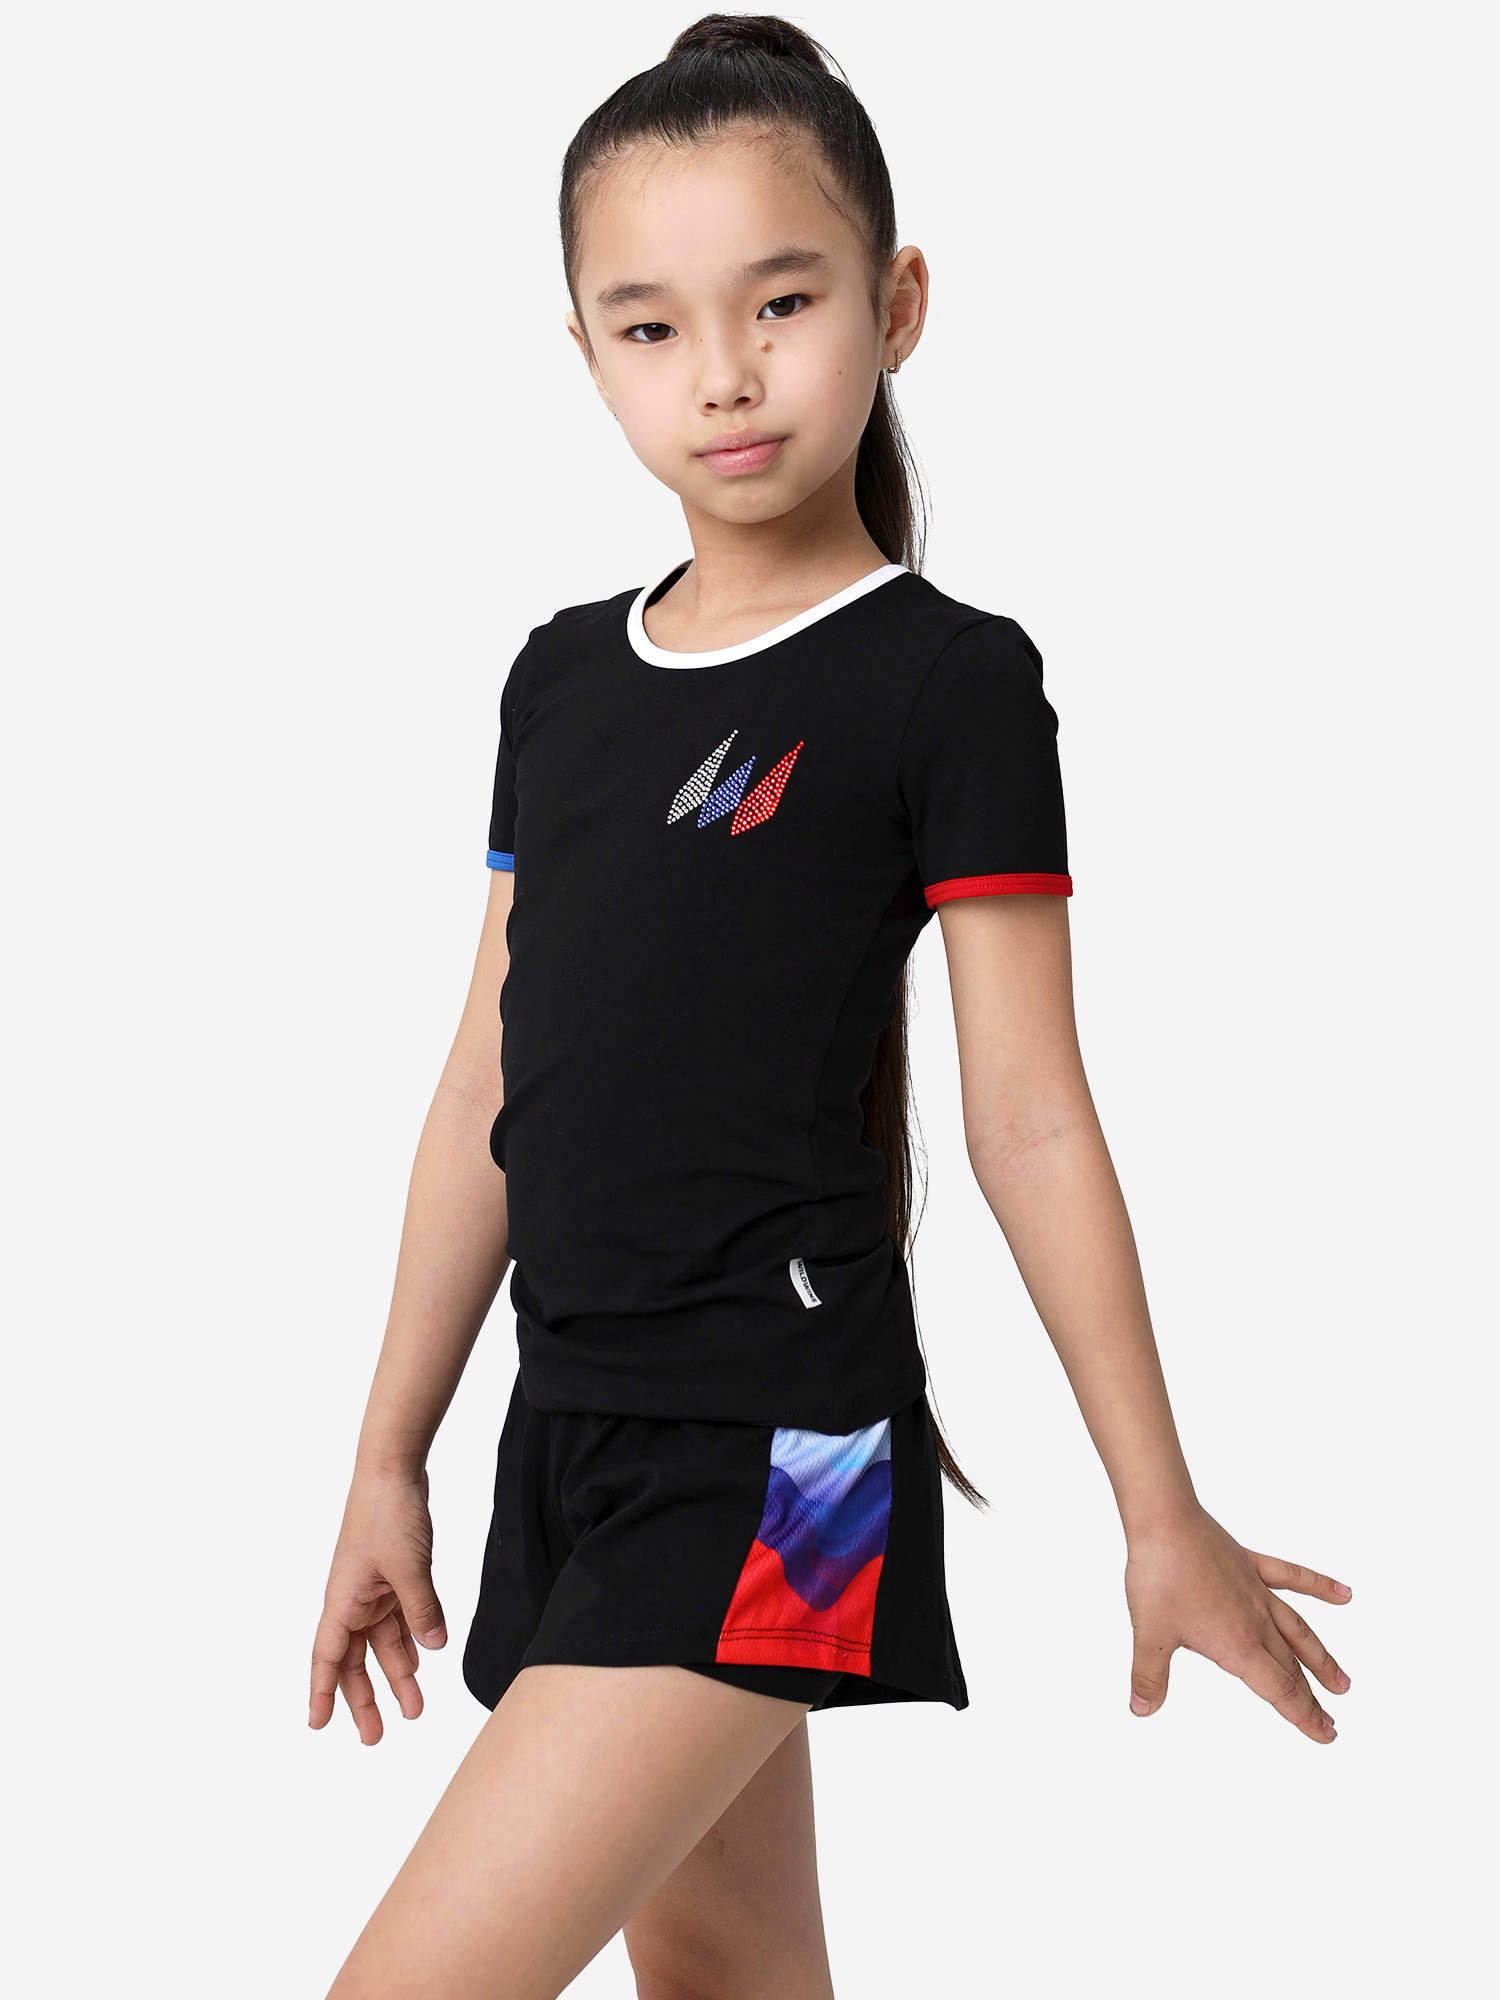 Футболка спортивная для девочки WILDWINS, Черный спортивная футболка в рубчик черного а